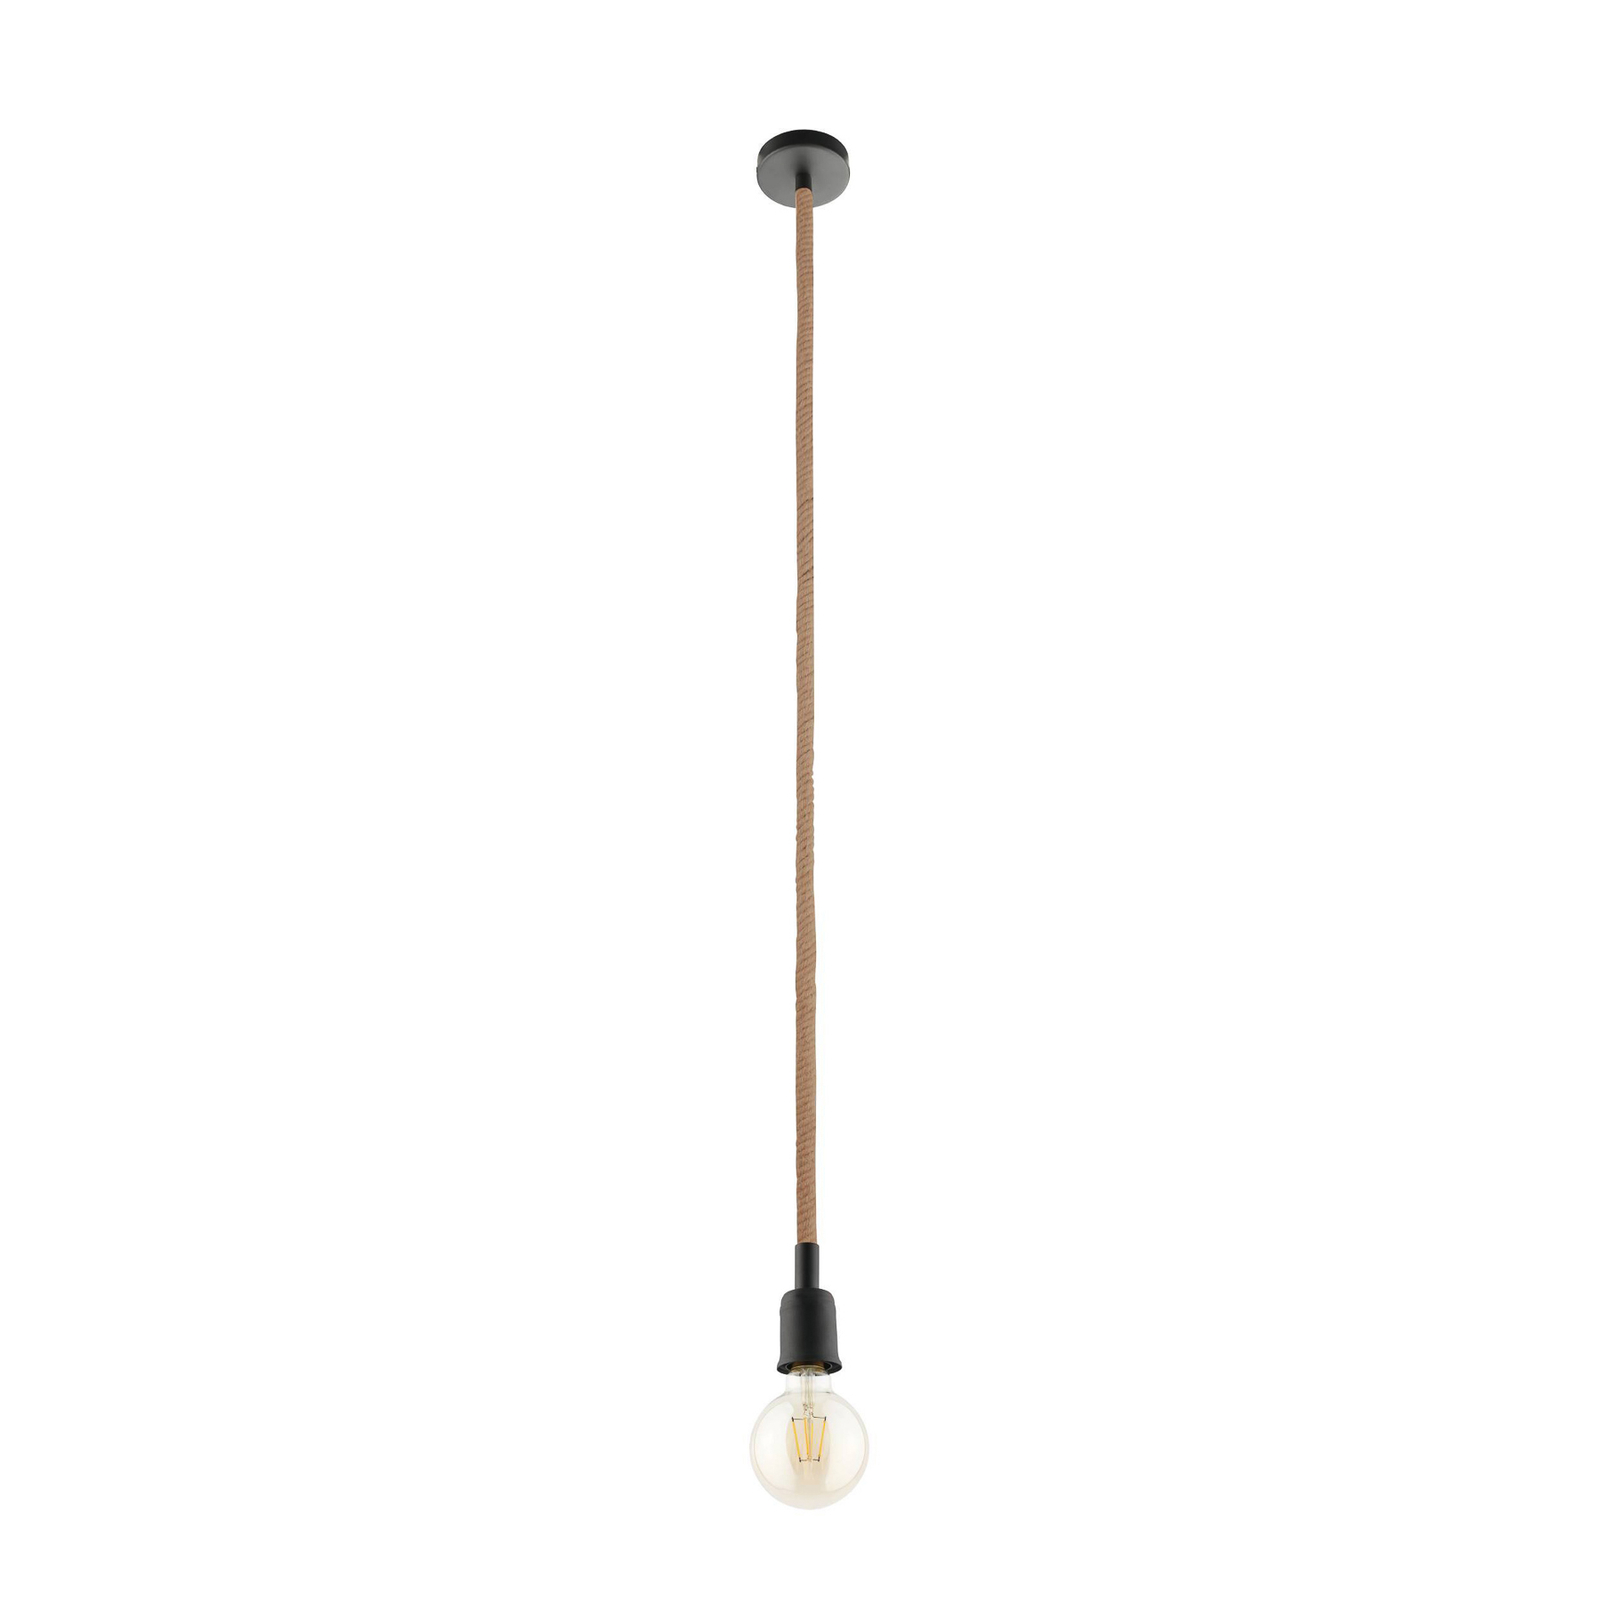 Hanglamp Rampside met kabel, 1-lamp zonder kap